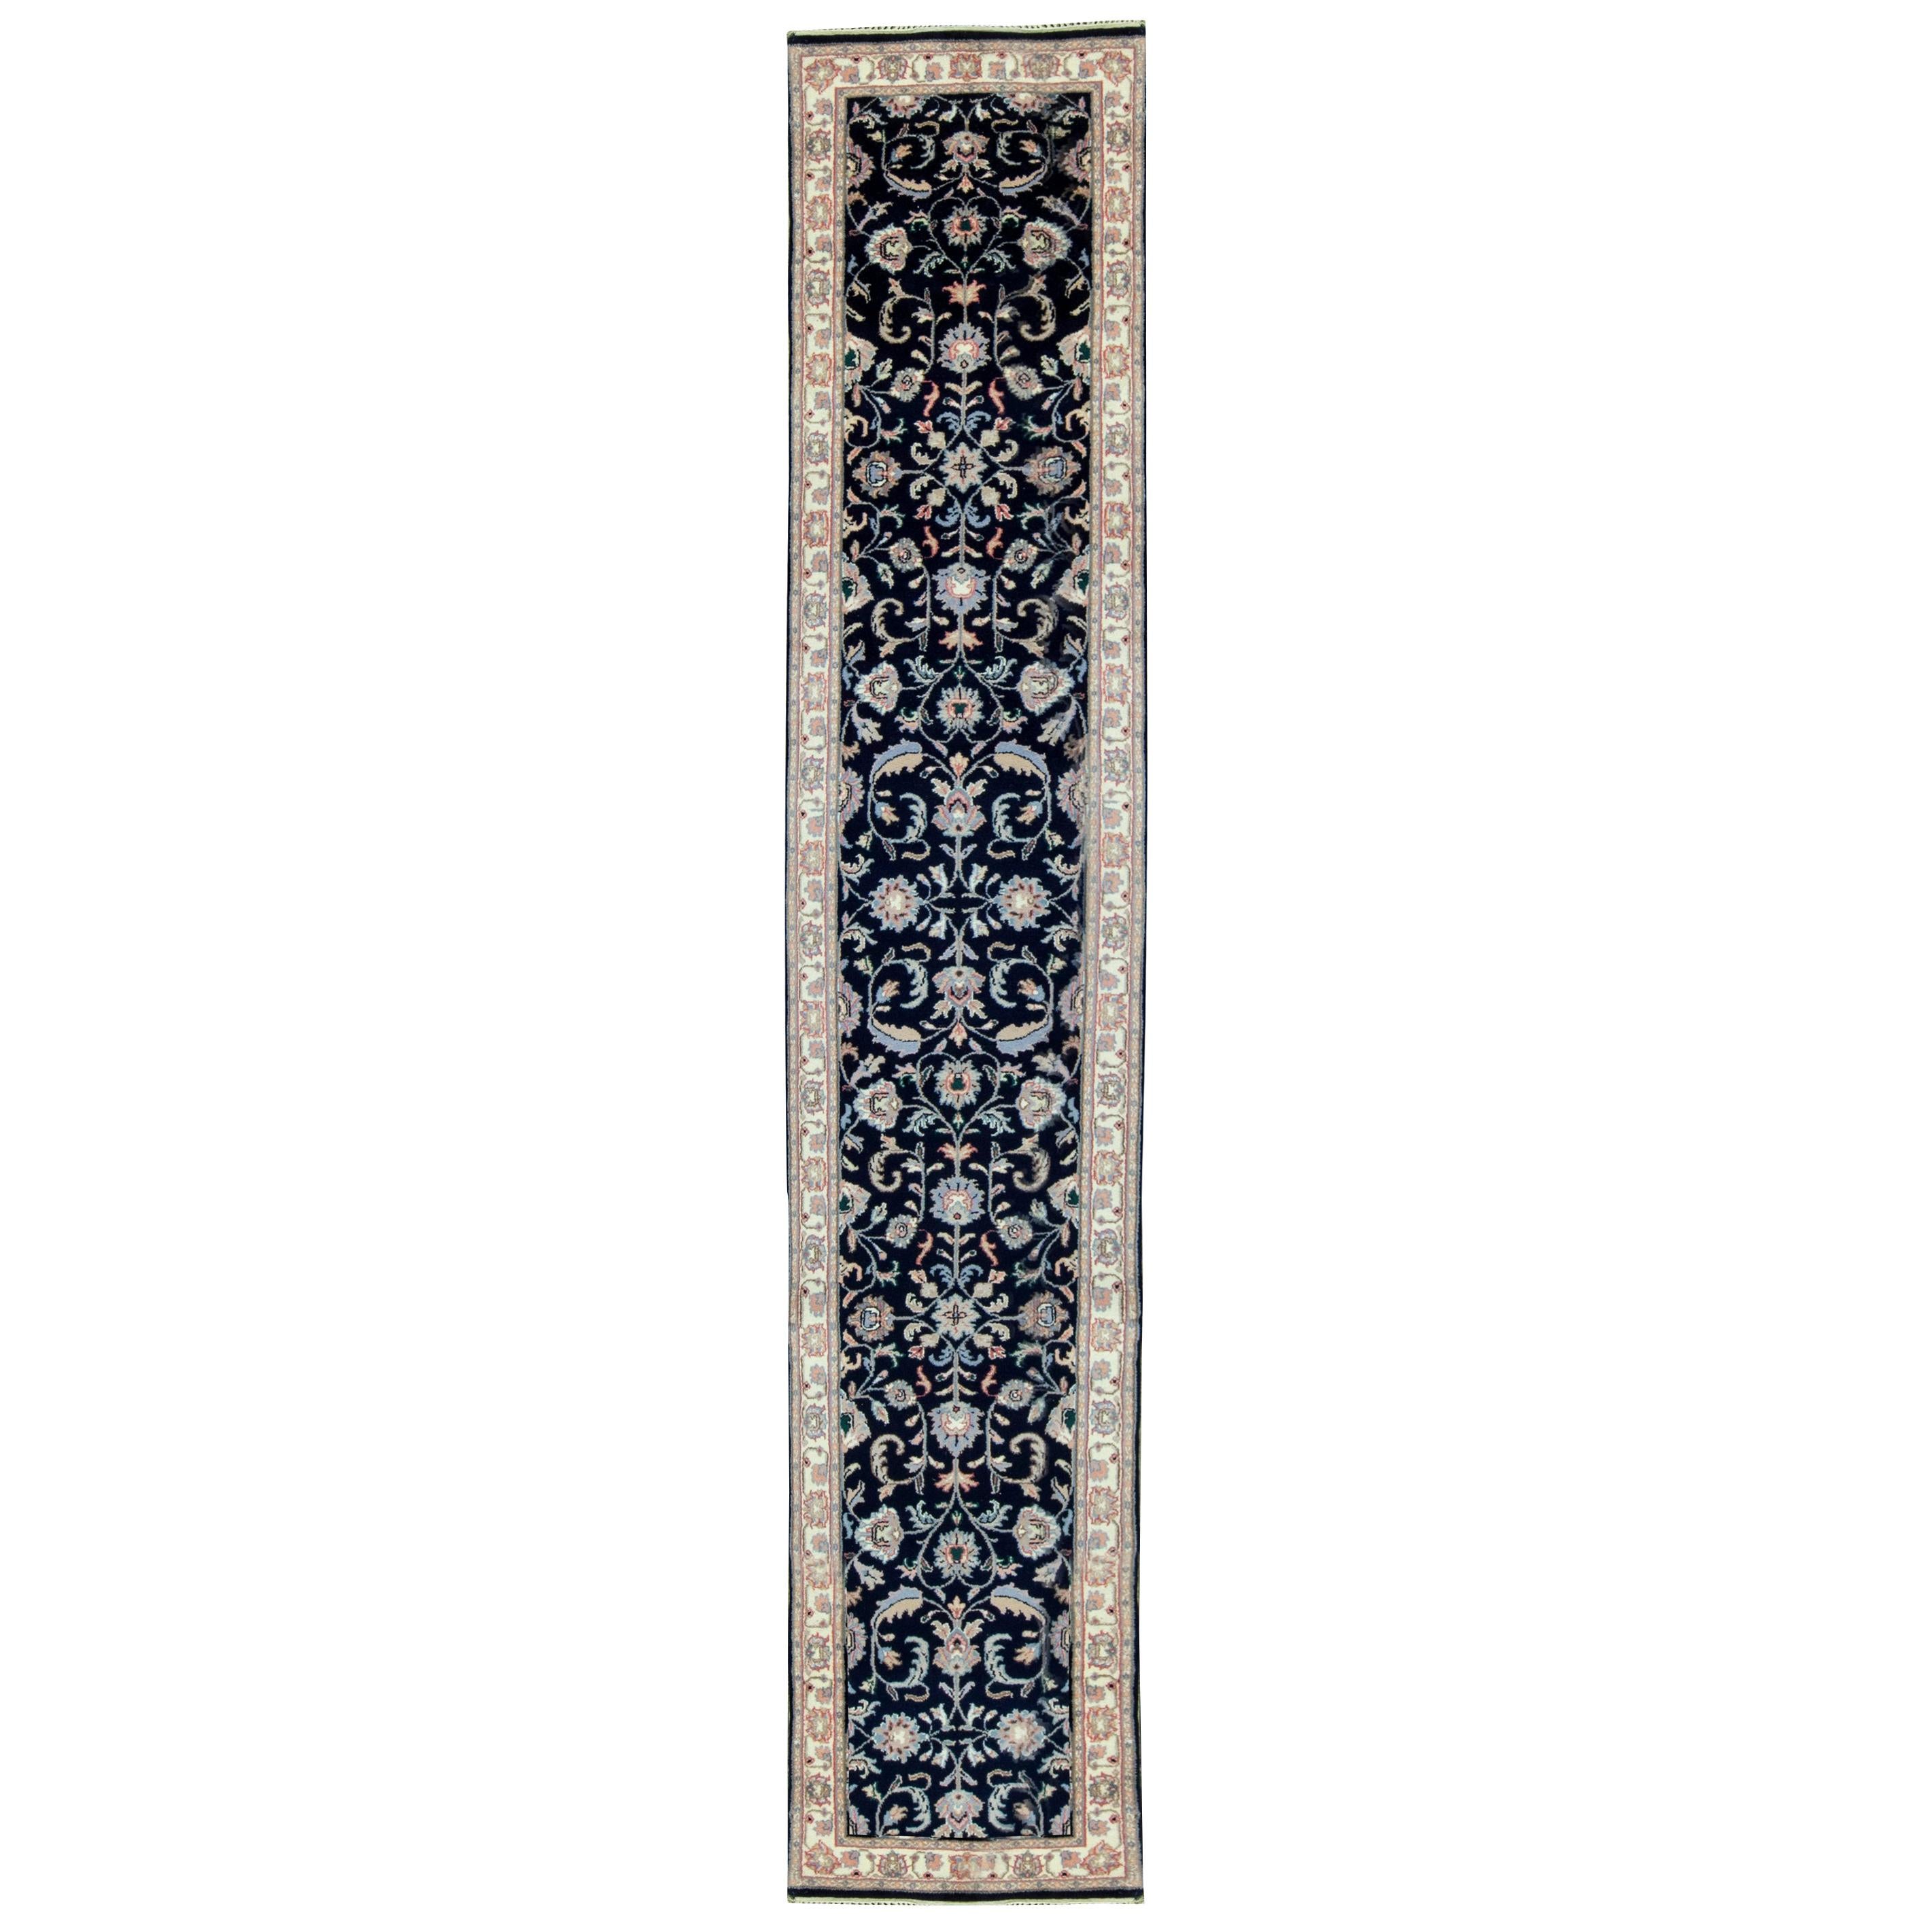 Tapis de sol traditionnel en laine tissée à la main 2'6 x 18'